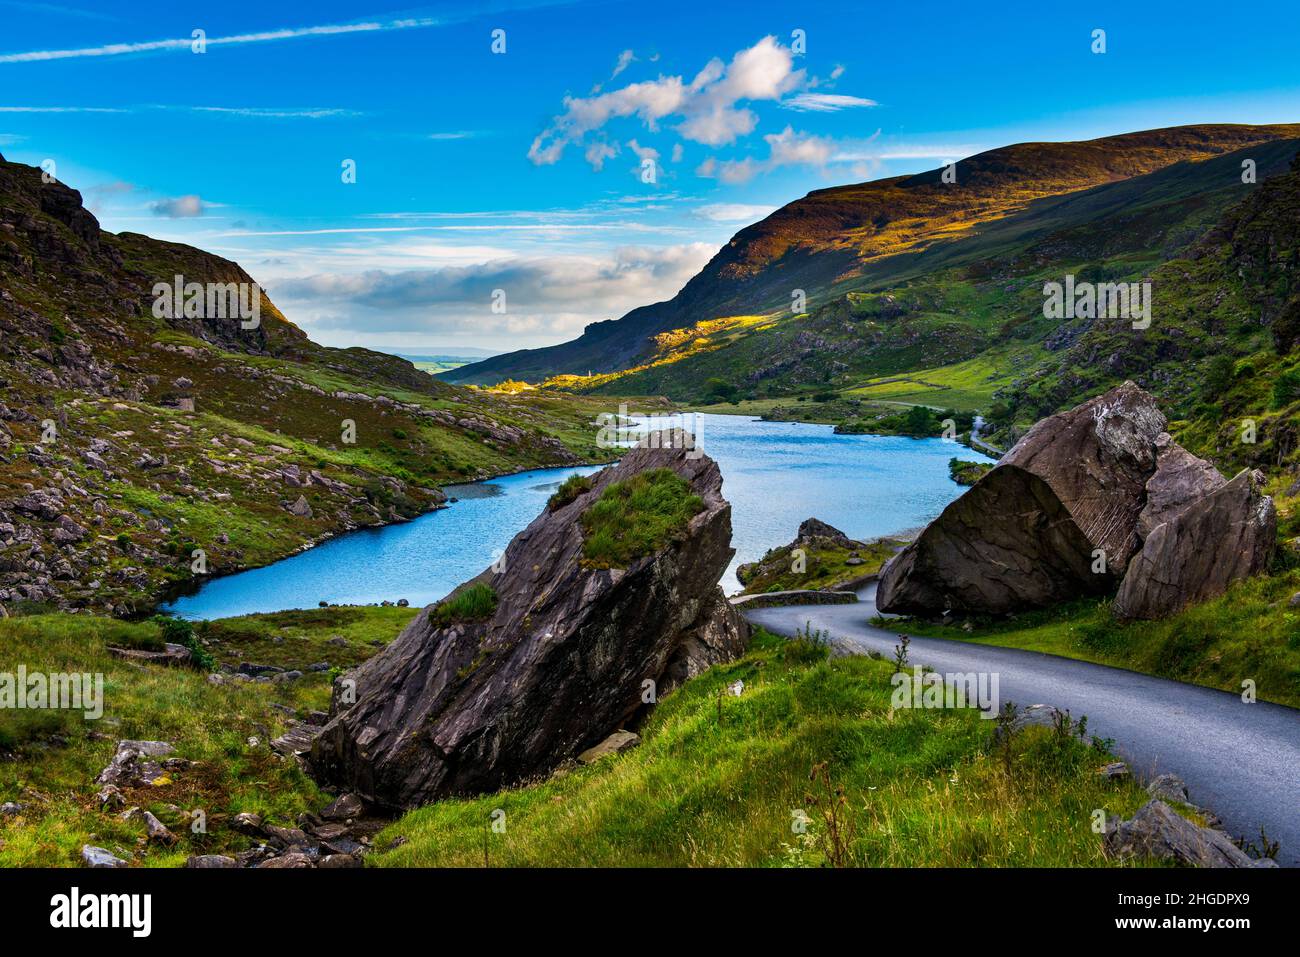 Gap of Dunloe, Killarney National Park, County Kerry, Ireland Stock Photo